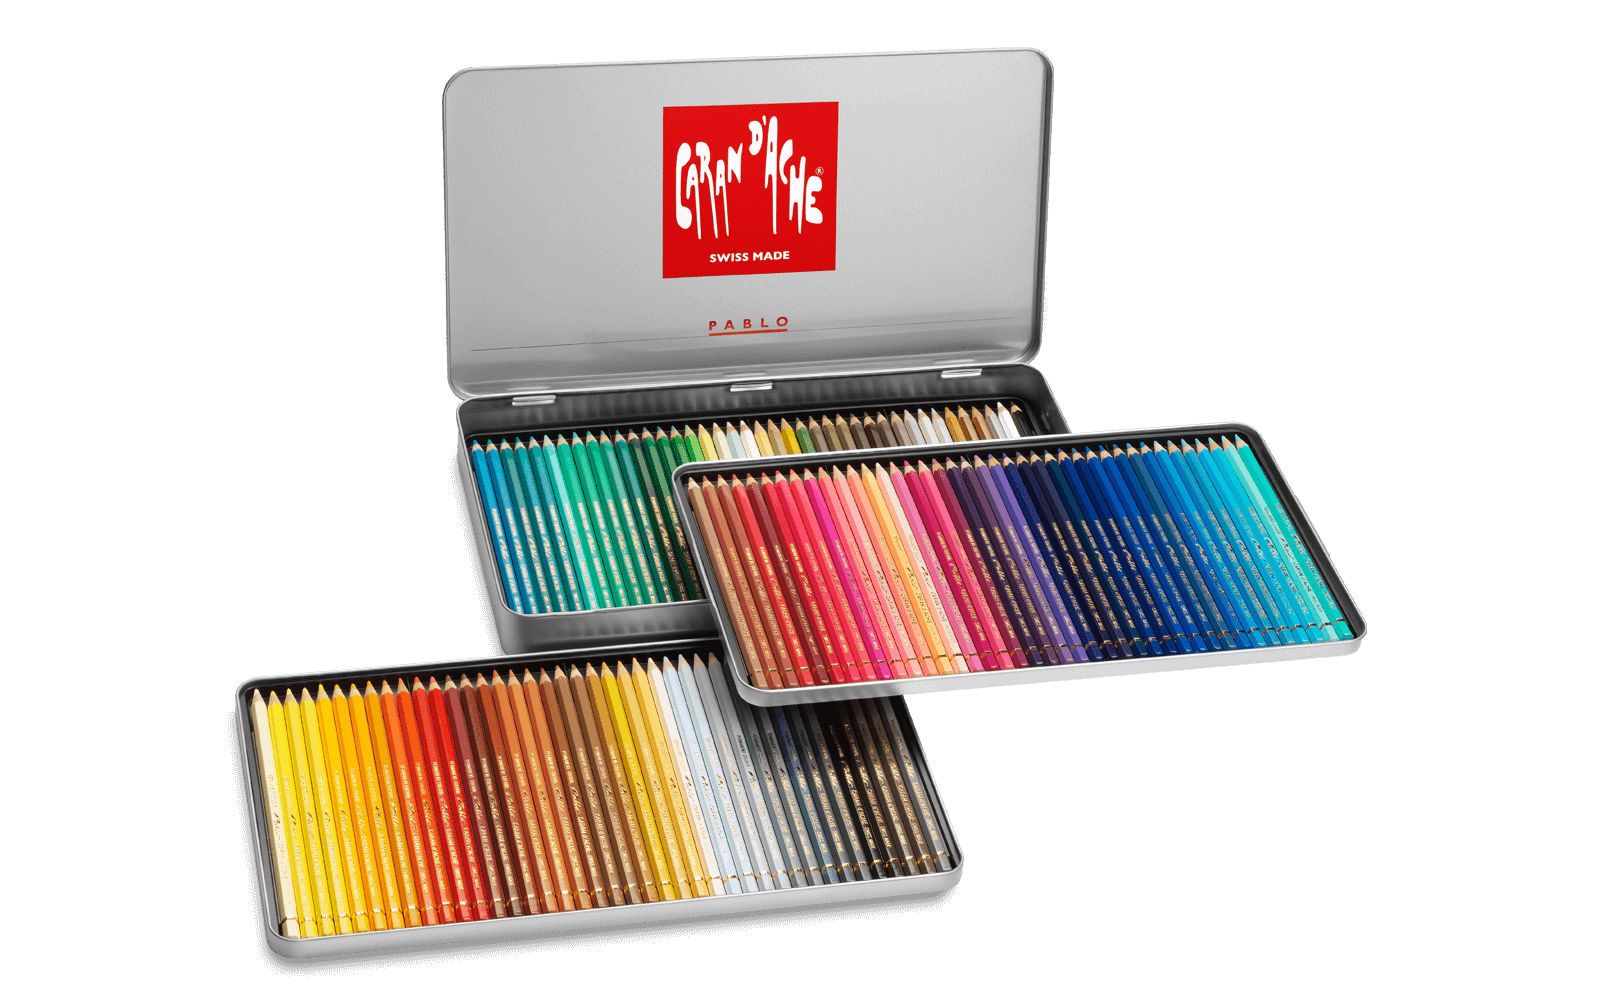 Caran d'Ache, Pablo Permanent Colored Pencils, 120 Colors